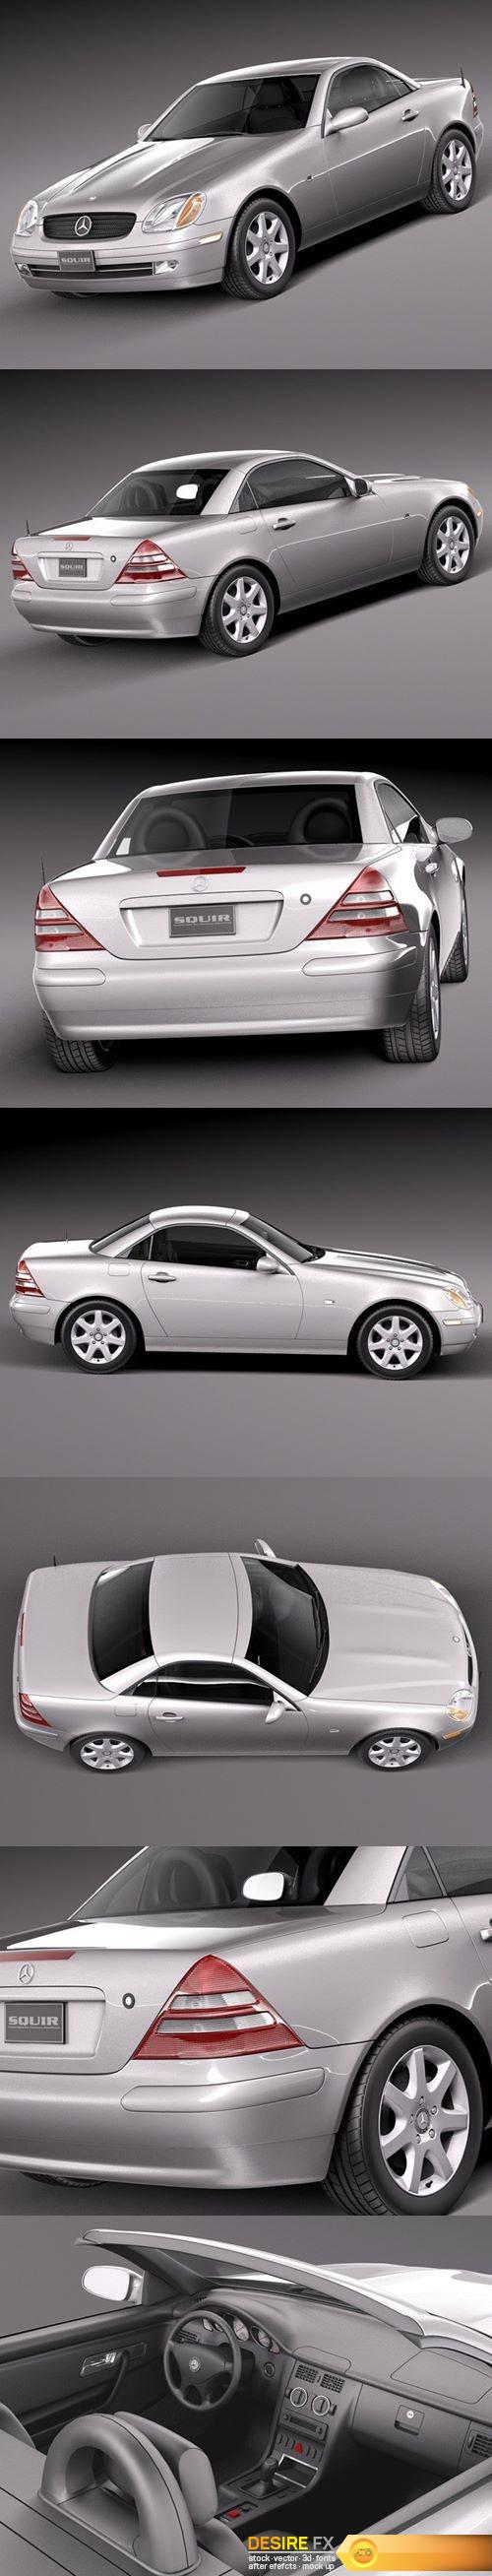 Mercedes-Benz SLK R170 1996-2004 3D Model $129 - .3ds .c4d .fbx